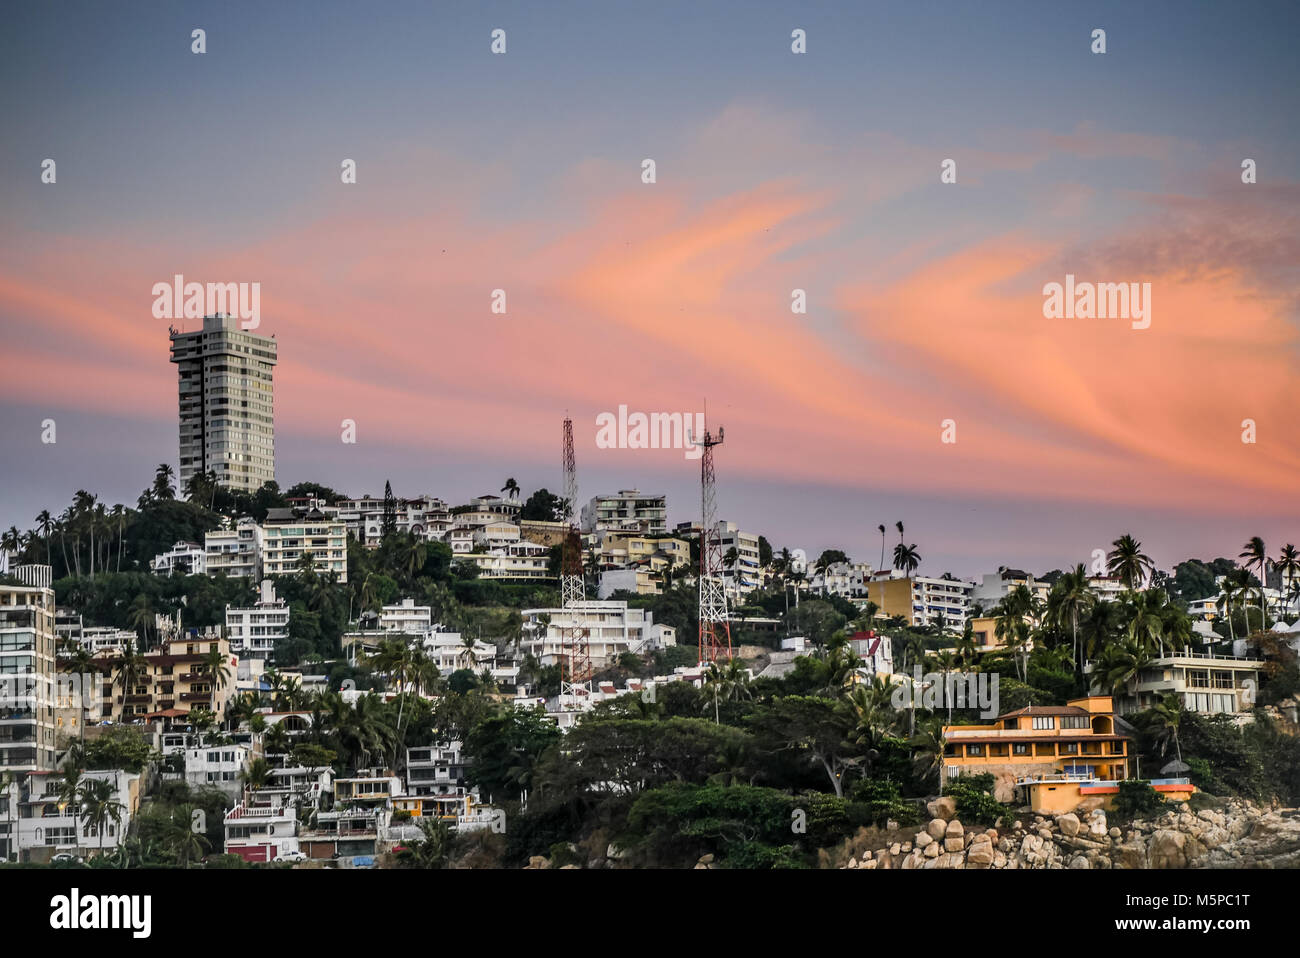 Vista del quartiere di Acapulco su una scogliera con alberghi e case. Foto Stock